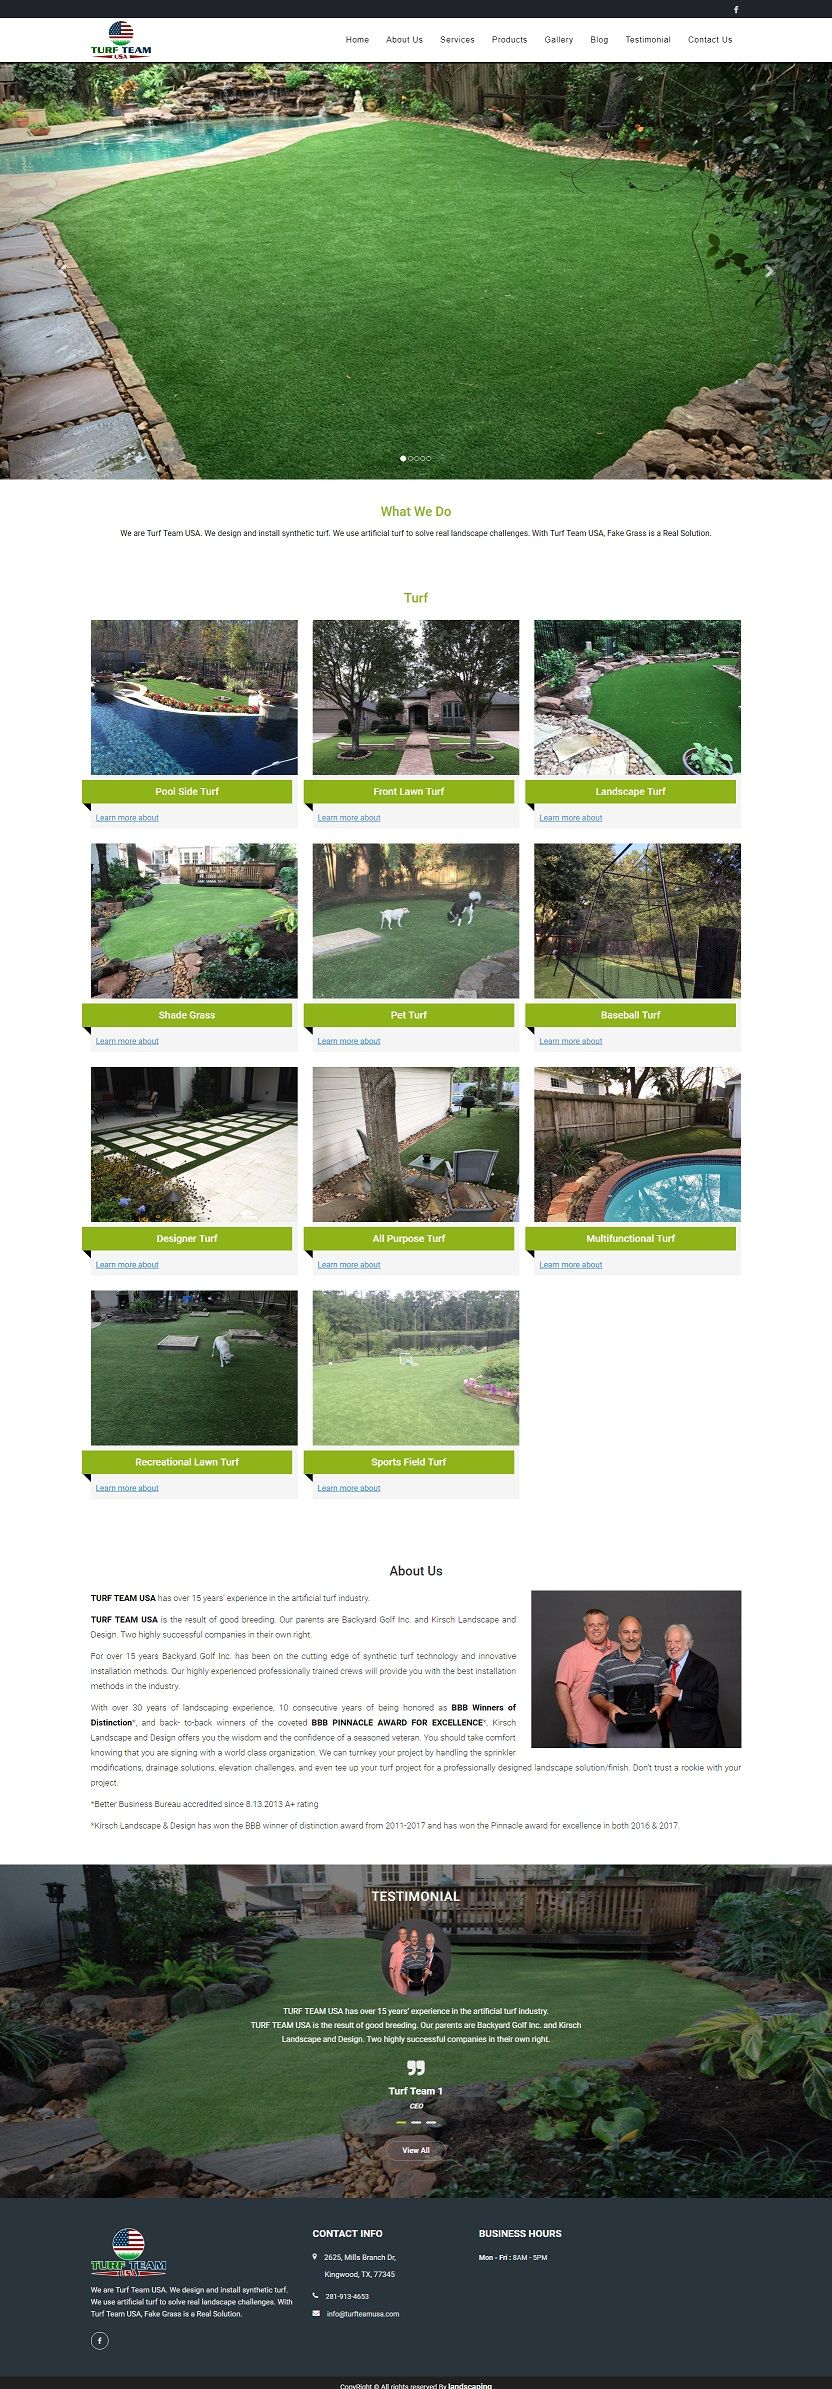 Landscape artificial turf services web design 